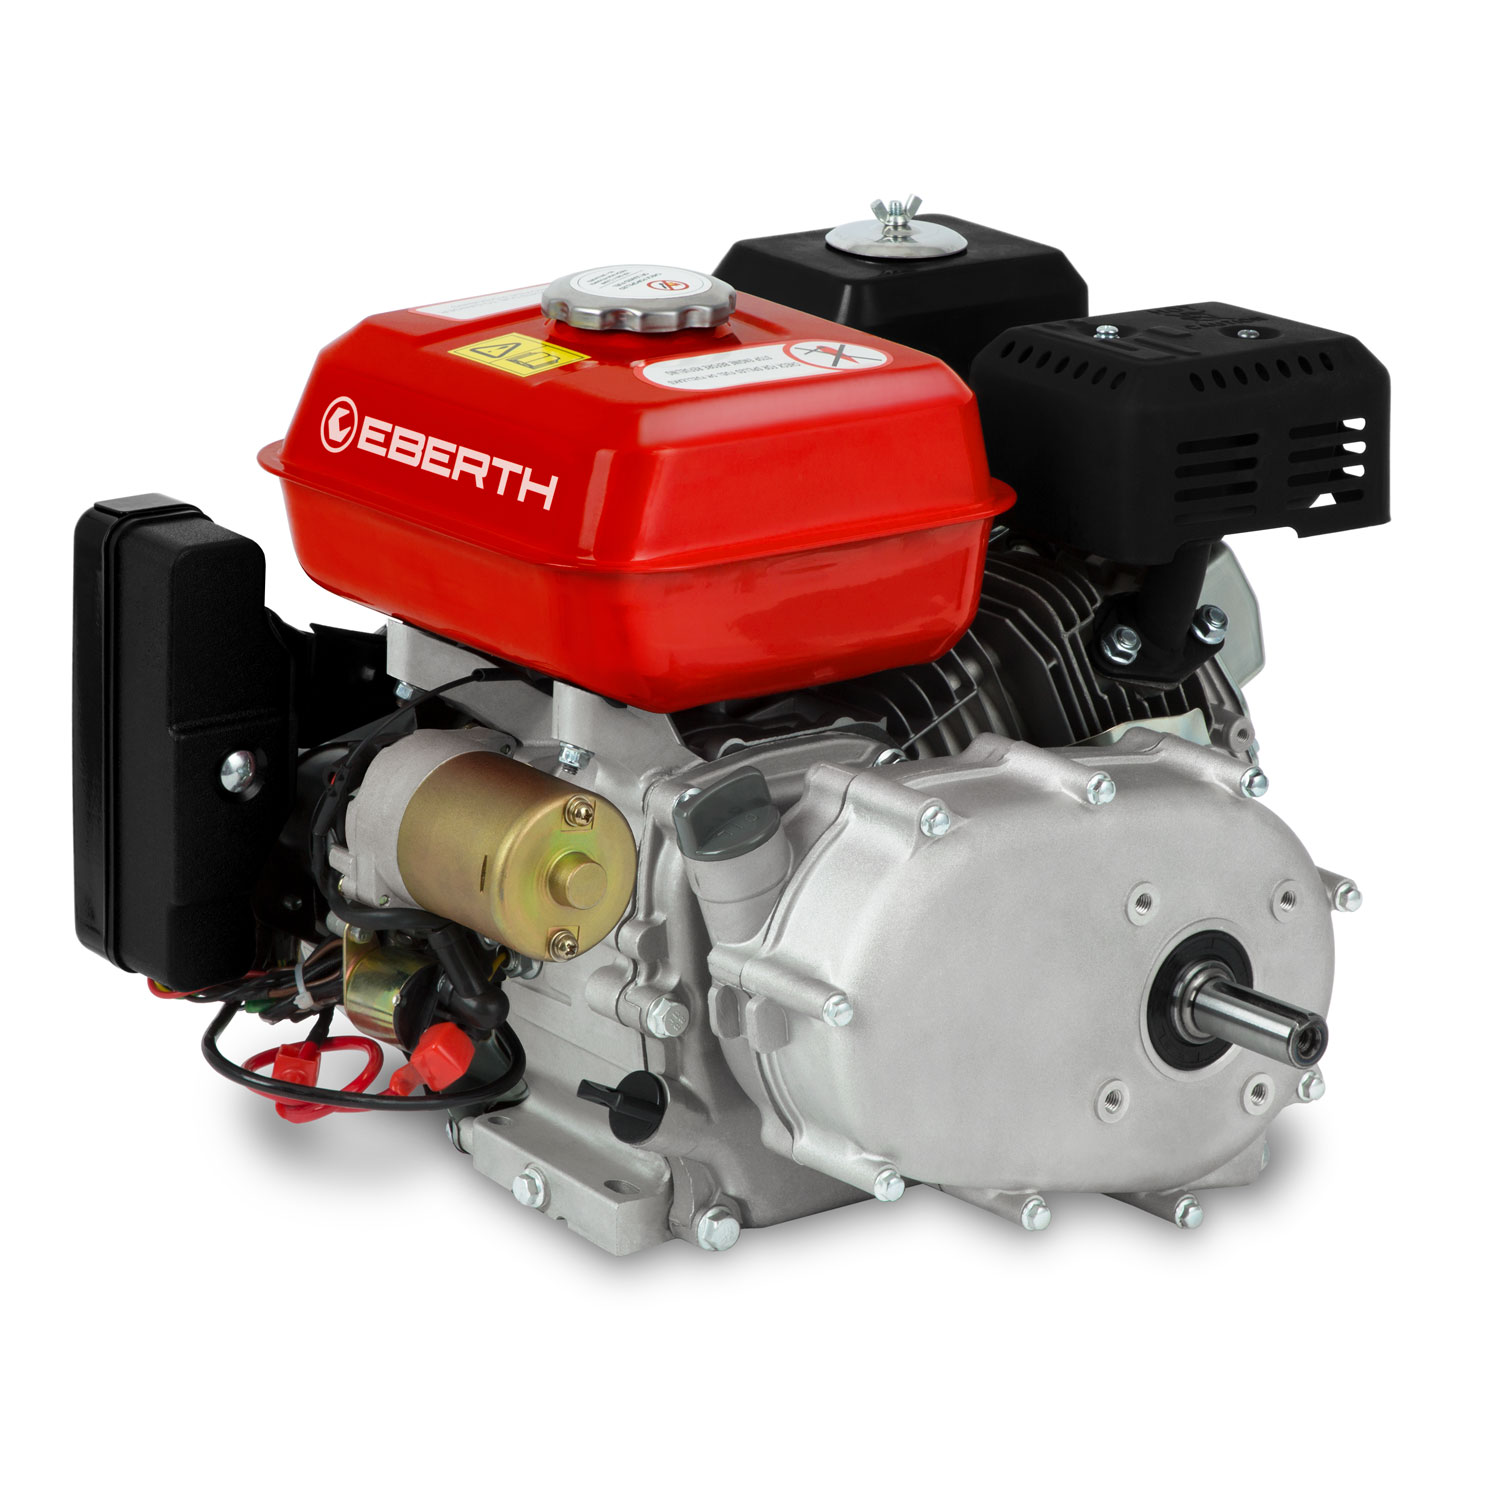 EBERTH 4,2 PS Dieselmotor 1 Zylinder 4-Takt 20mm Welle E-Start